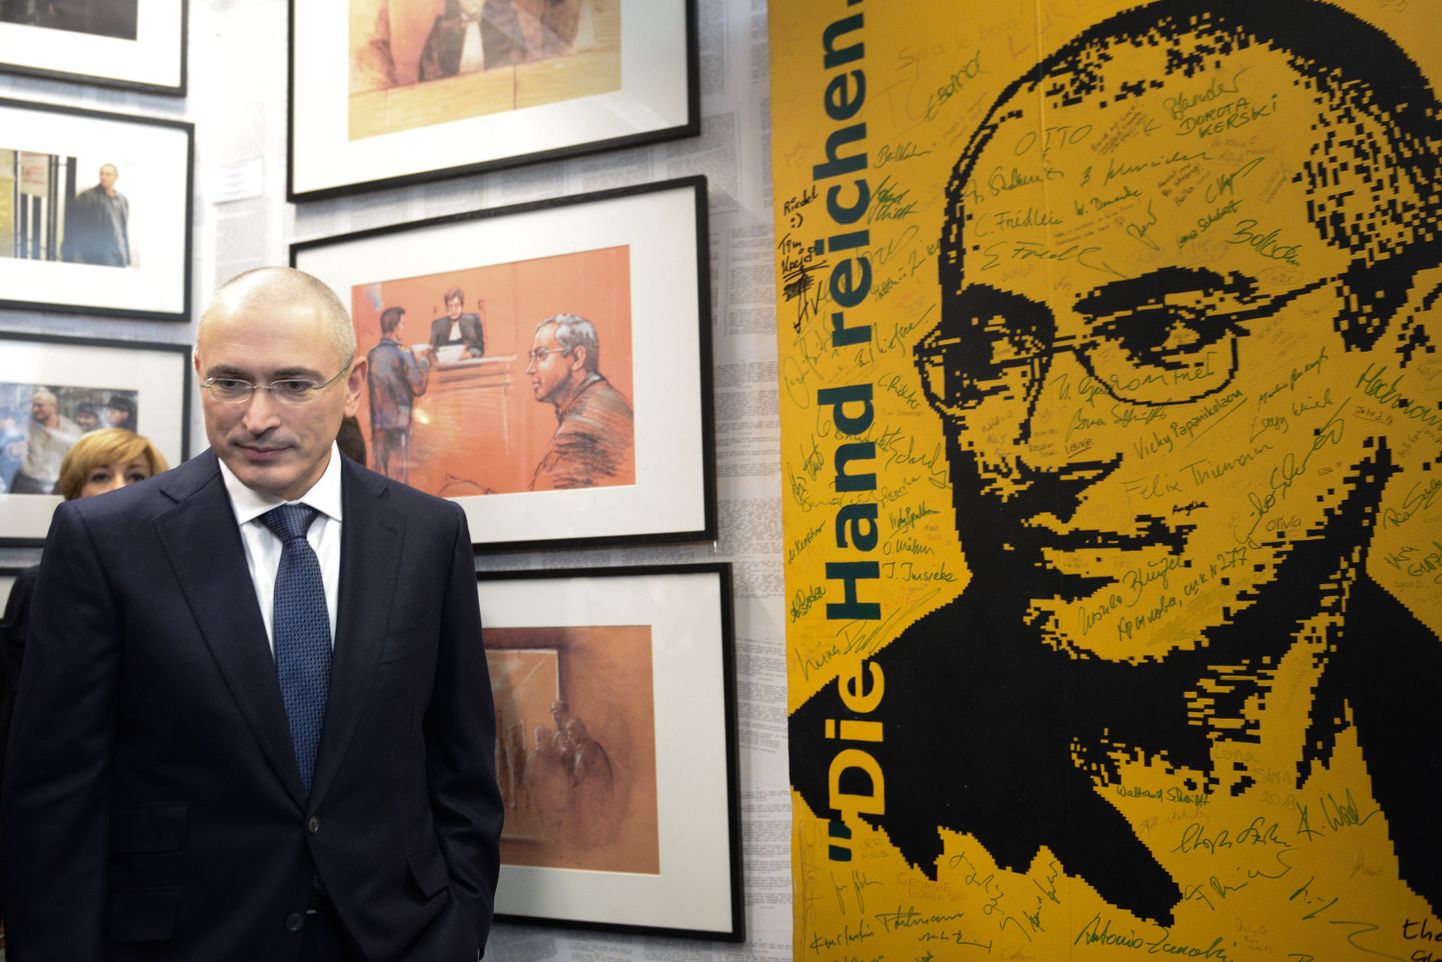 Hodorkovski viibib praegu Berliinis ning annab Berliini müüri muuseumis pressikonverentsi.